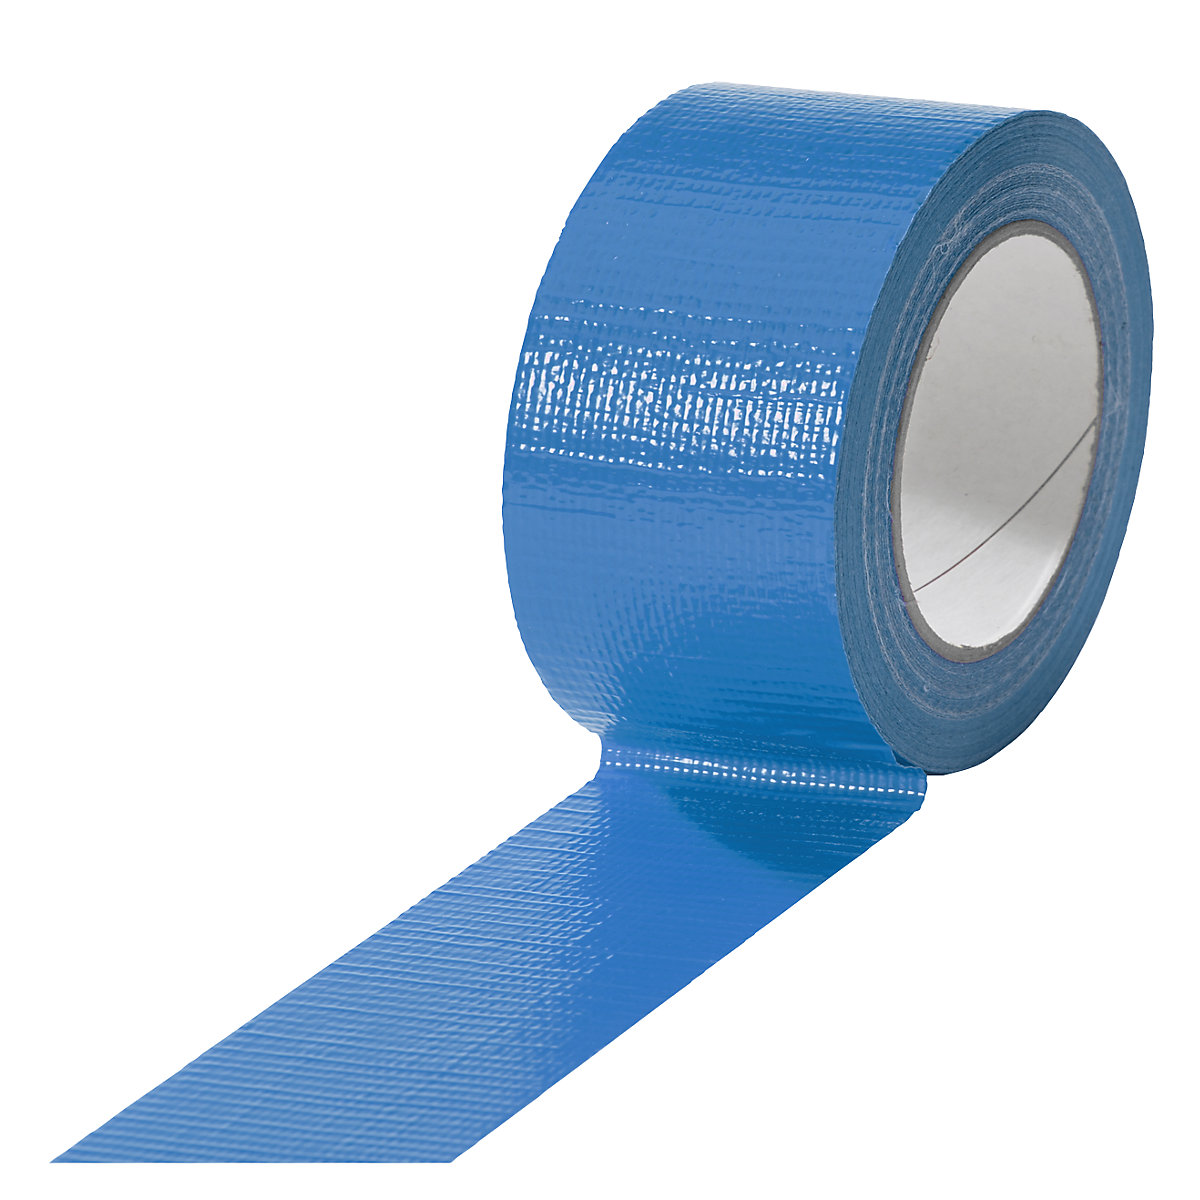 Traka od tkanine, u različitim bojama, pak. 18 rola, u plavoj boji, širina trake 50 mm-20